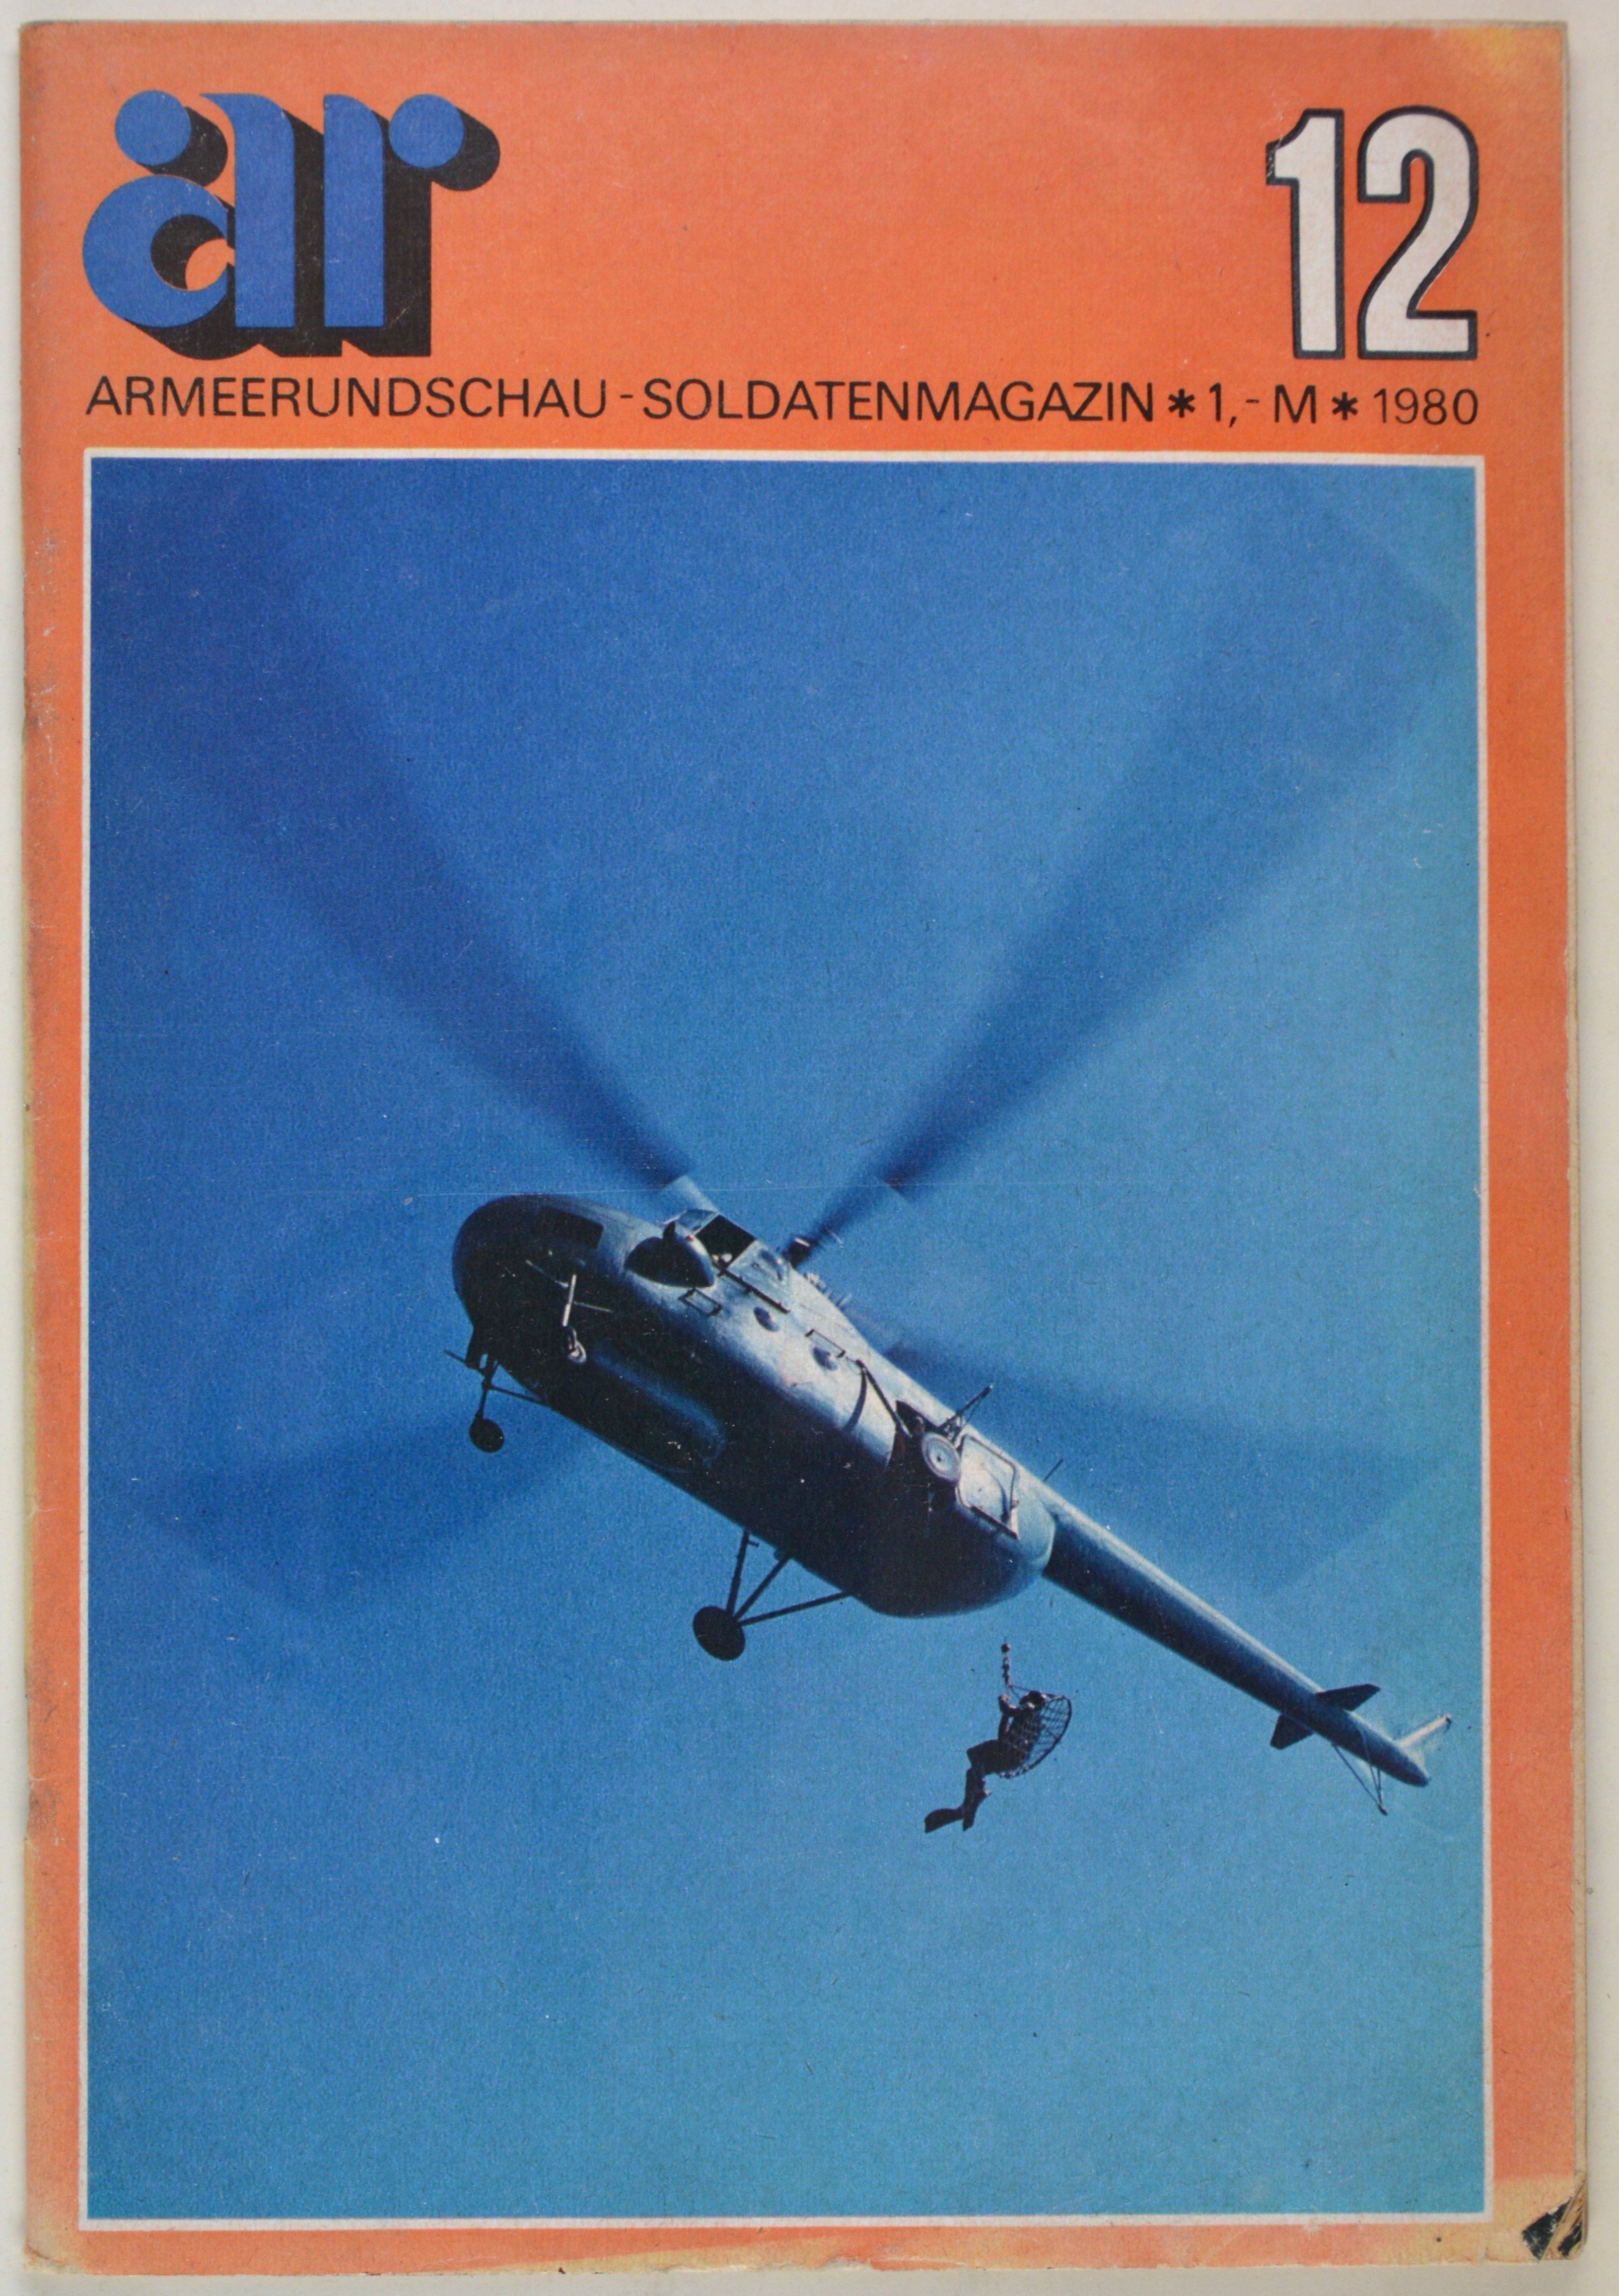 Armeerundschau - Soldatenmagazin (1980), Heft 12 (DDR Geschichtsmuseum im Dokumentationszentrum Perleberg CC BY-SA)